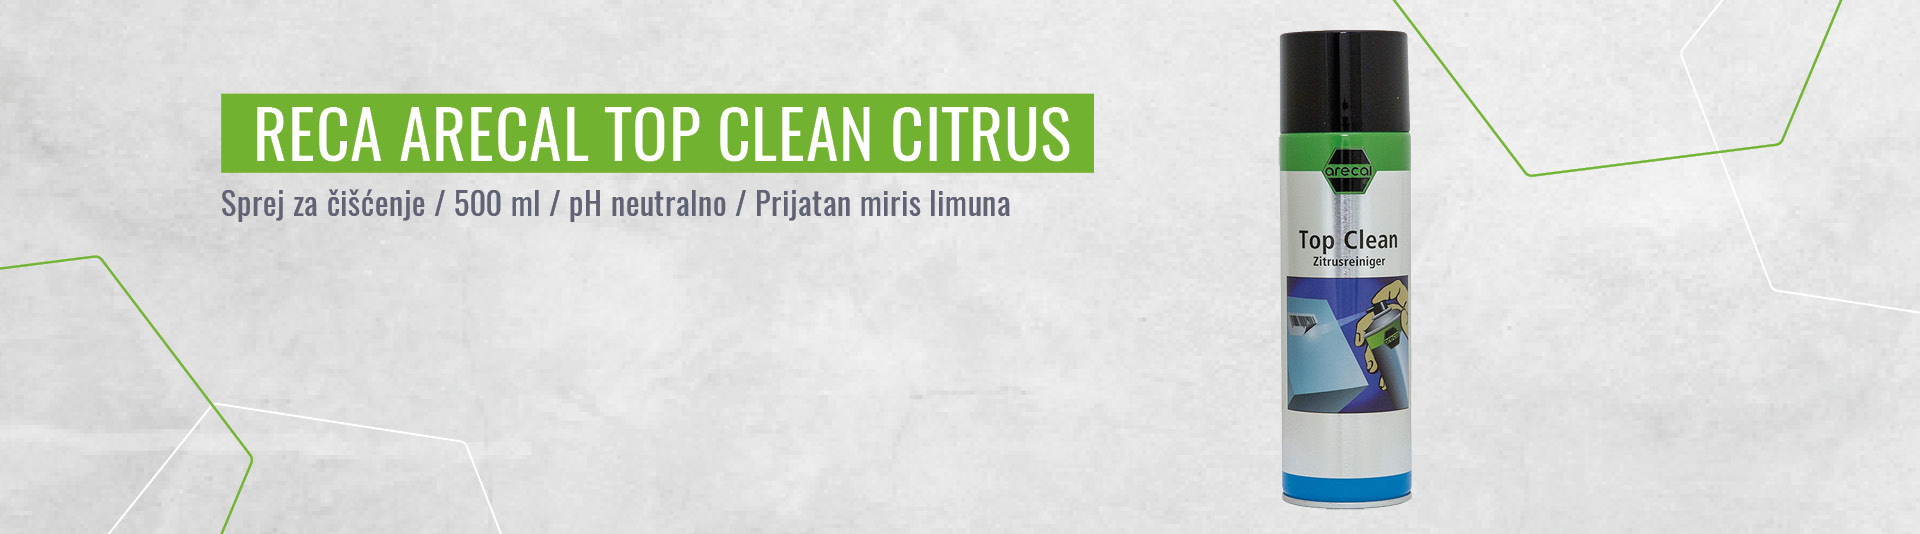 RECA arecal sprej za čišćenje TOP CLEAN Citrus